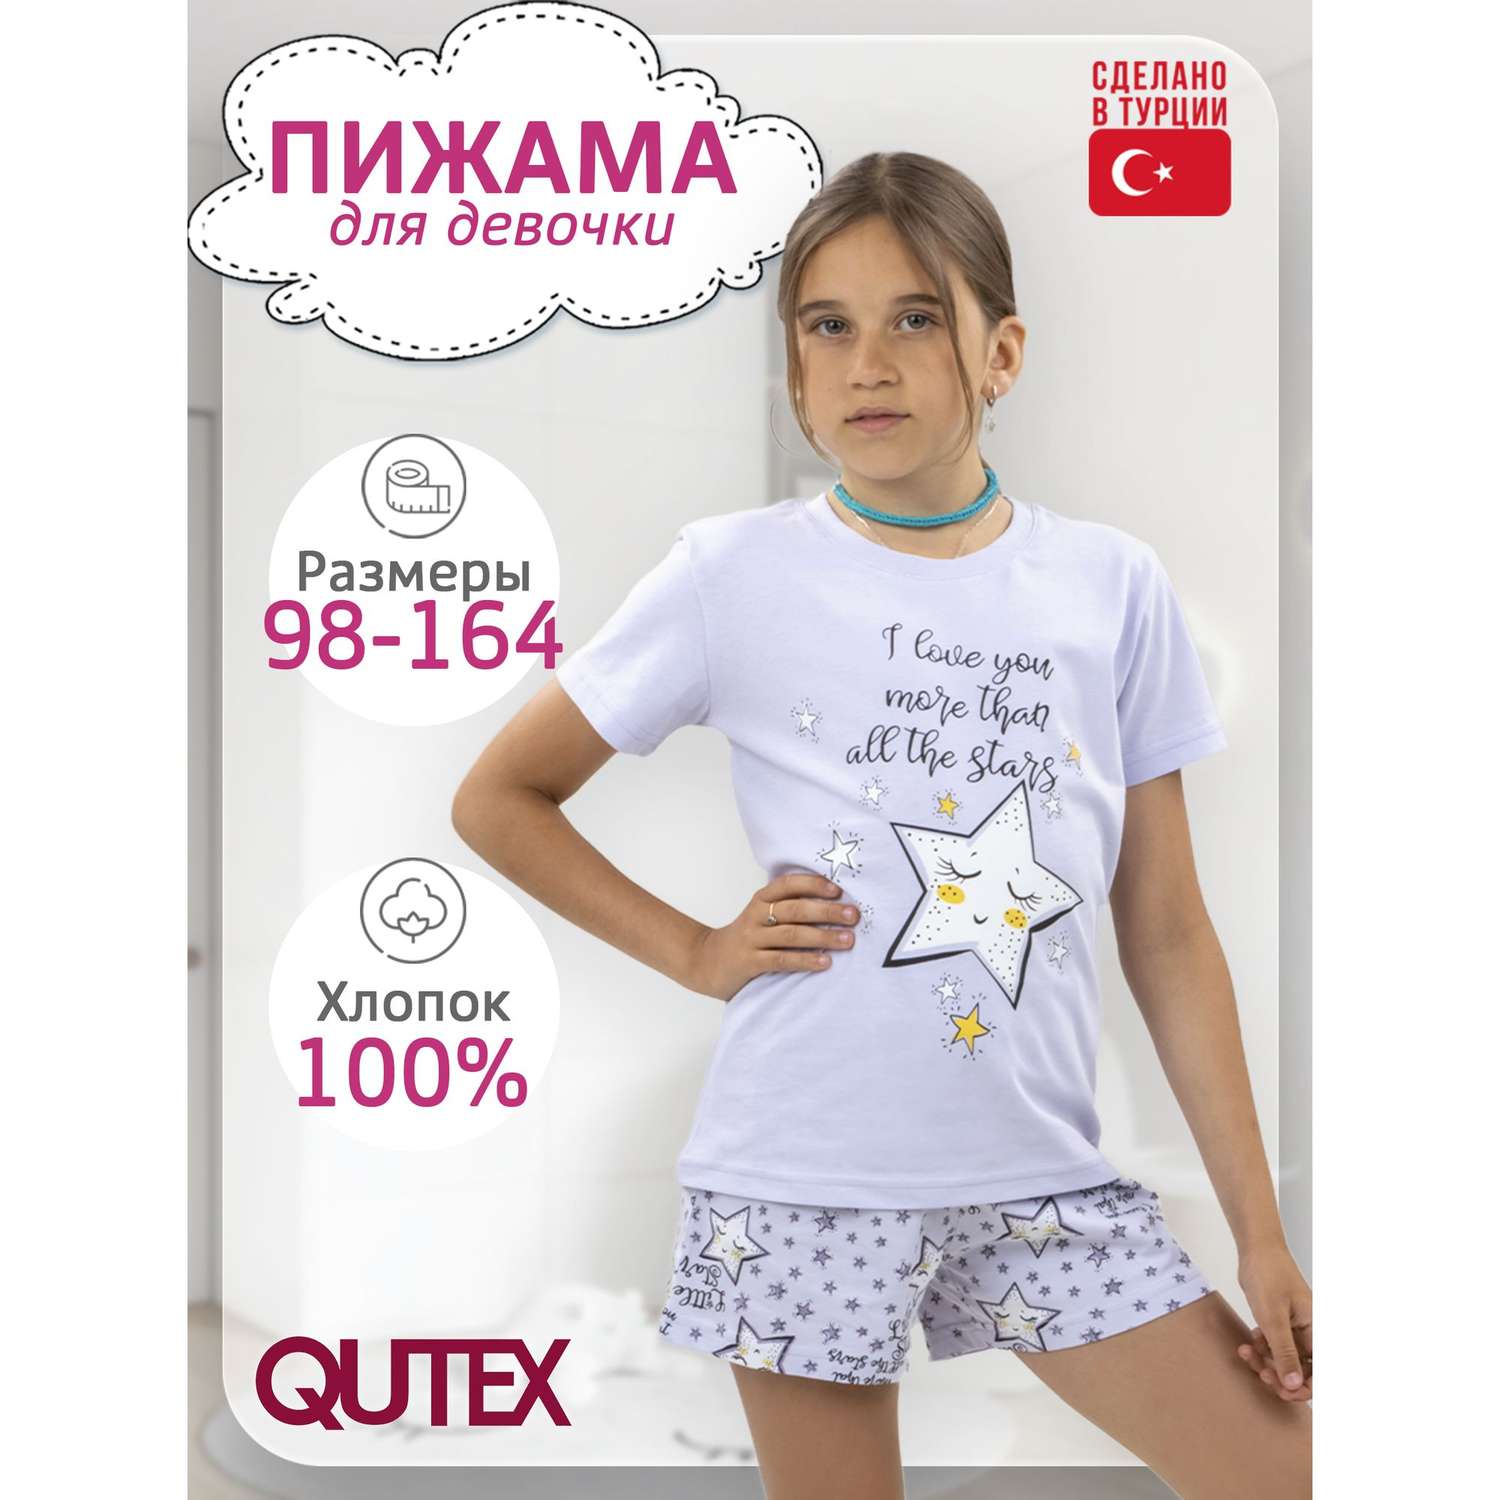 Пижама QUTEX 2301-004-1Q34 - фото 2